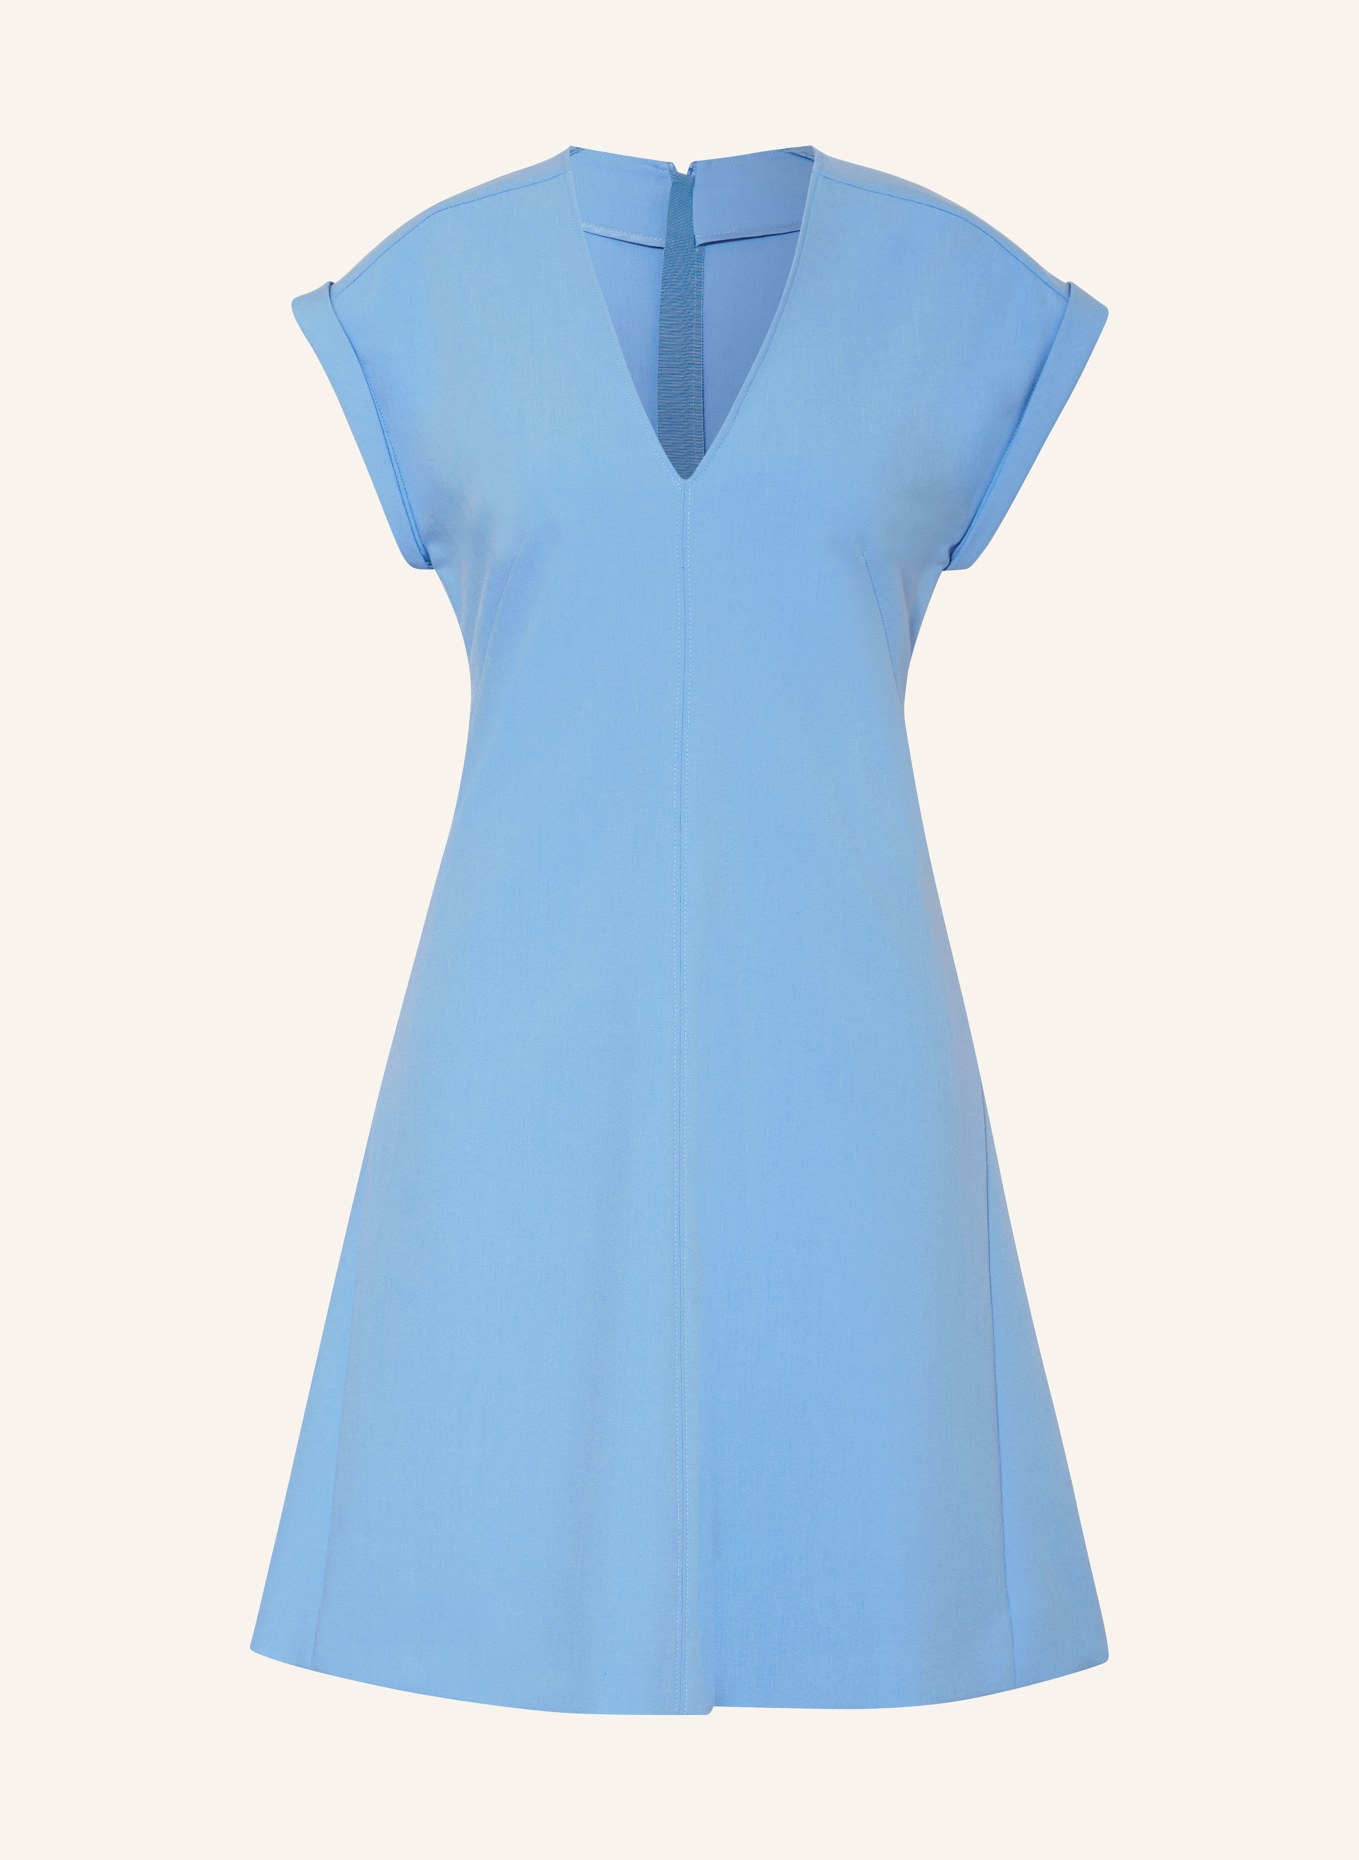 RIANI Kleid, Farbe: HELLBLAU (Bild 1)